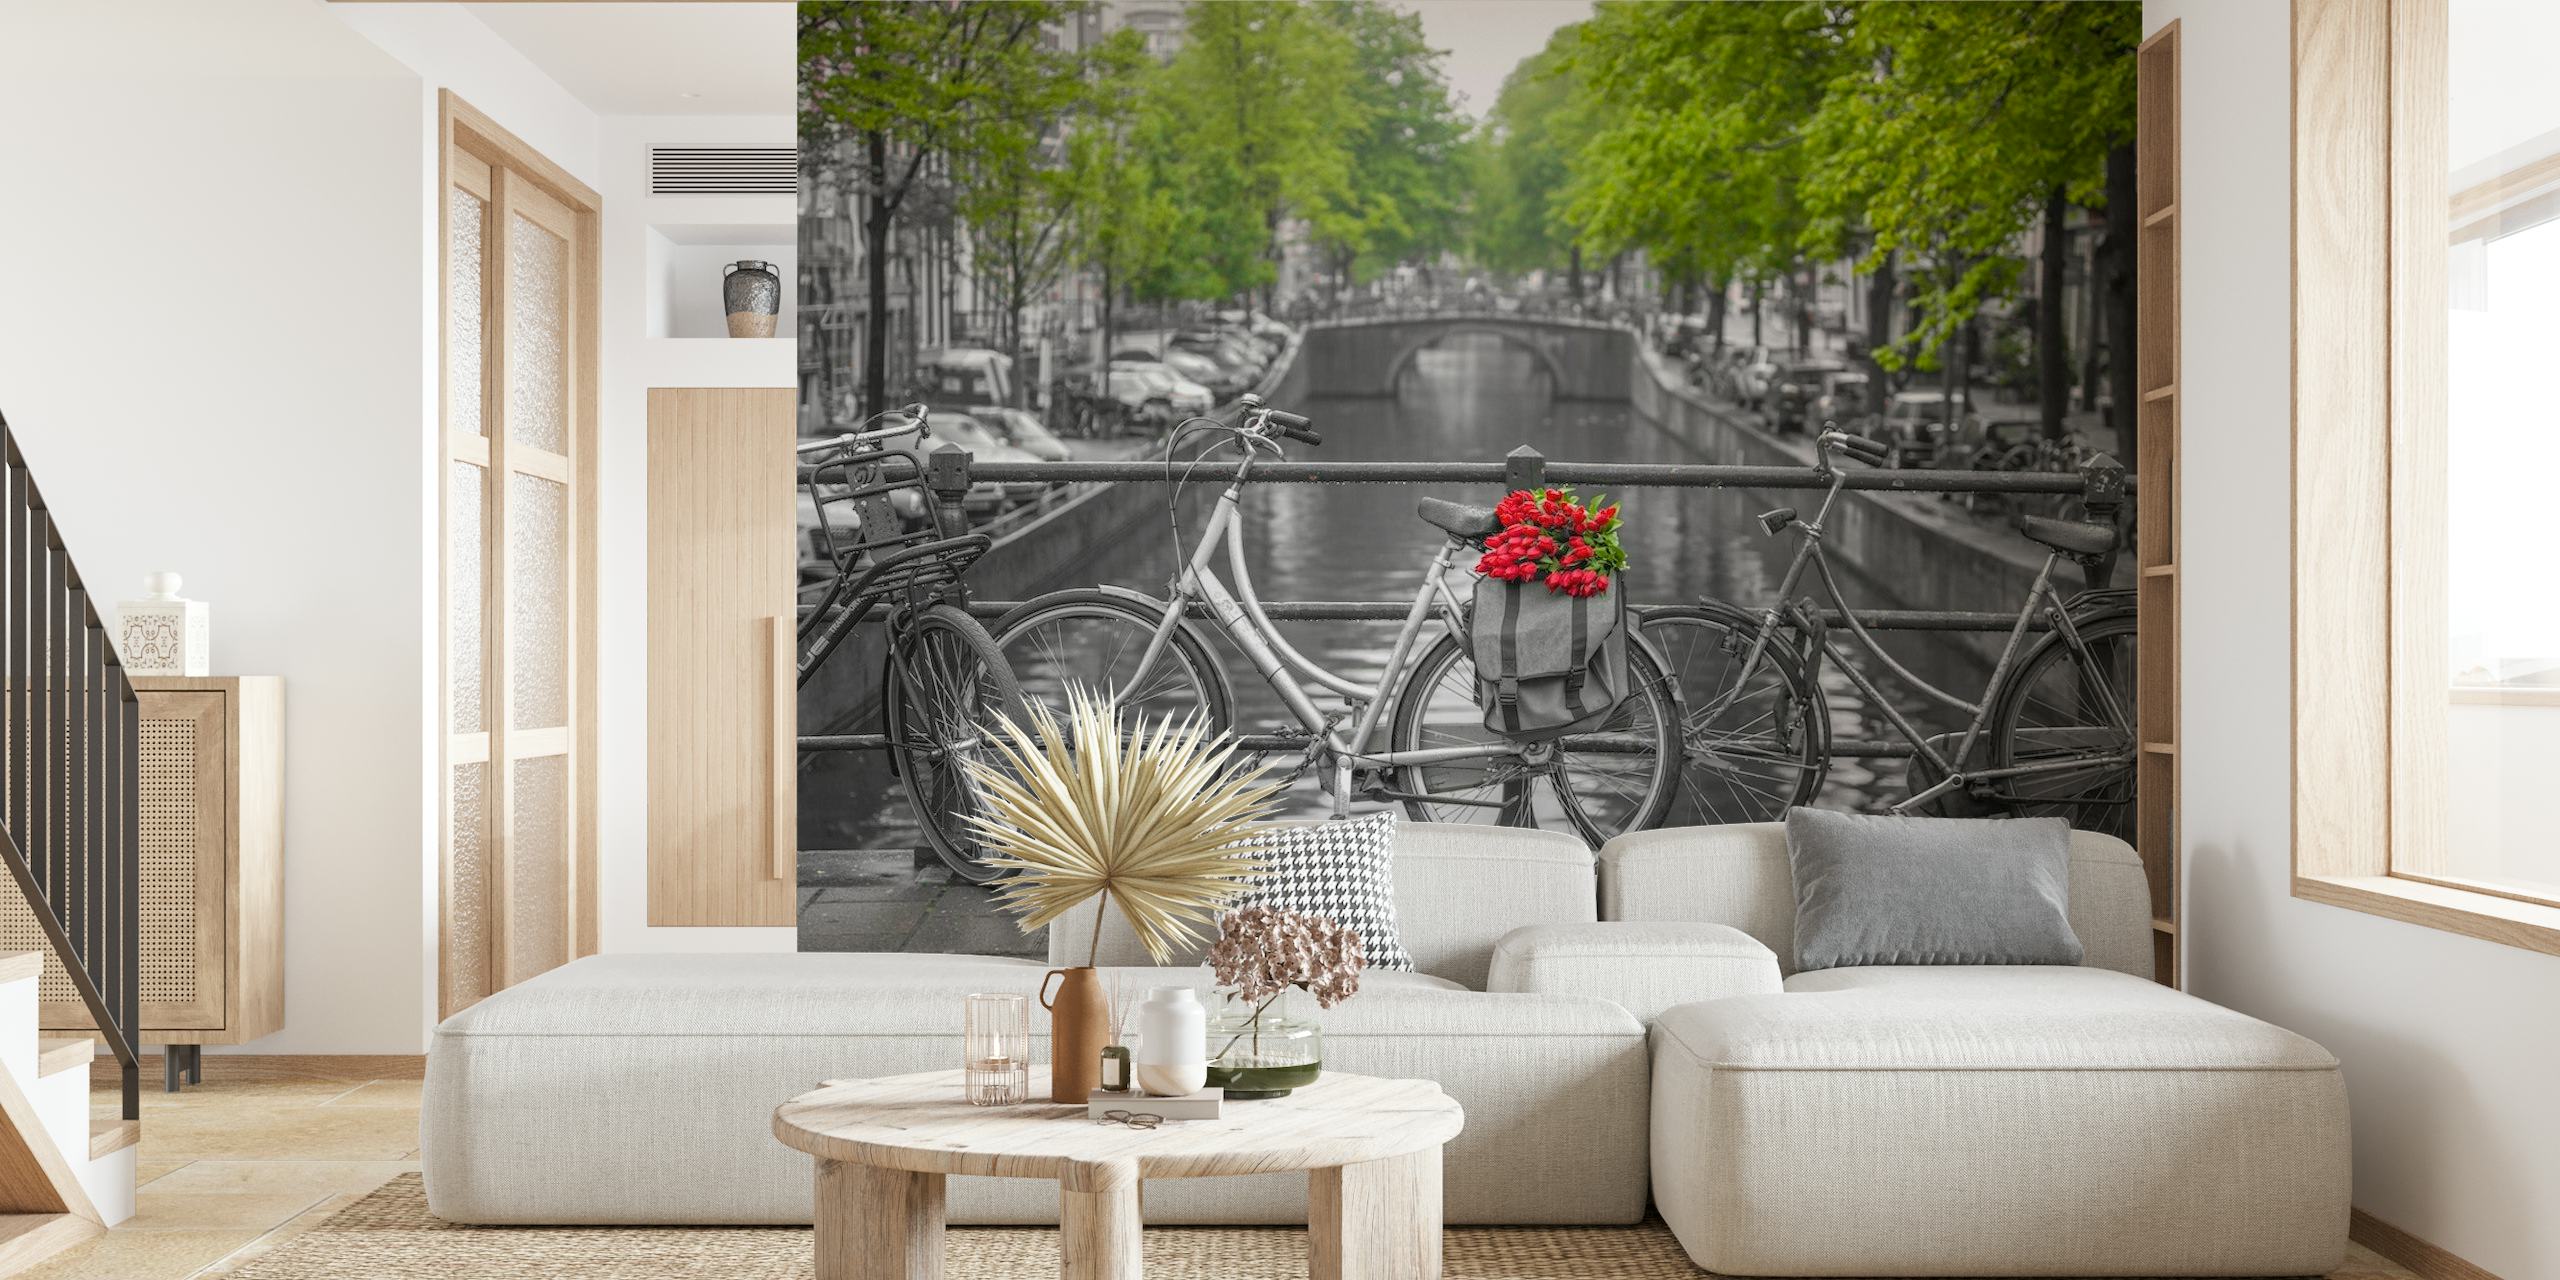 Fototapete Amsterdamer Kanal mit Fahrrädern und roten Blumen